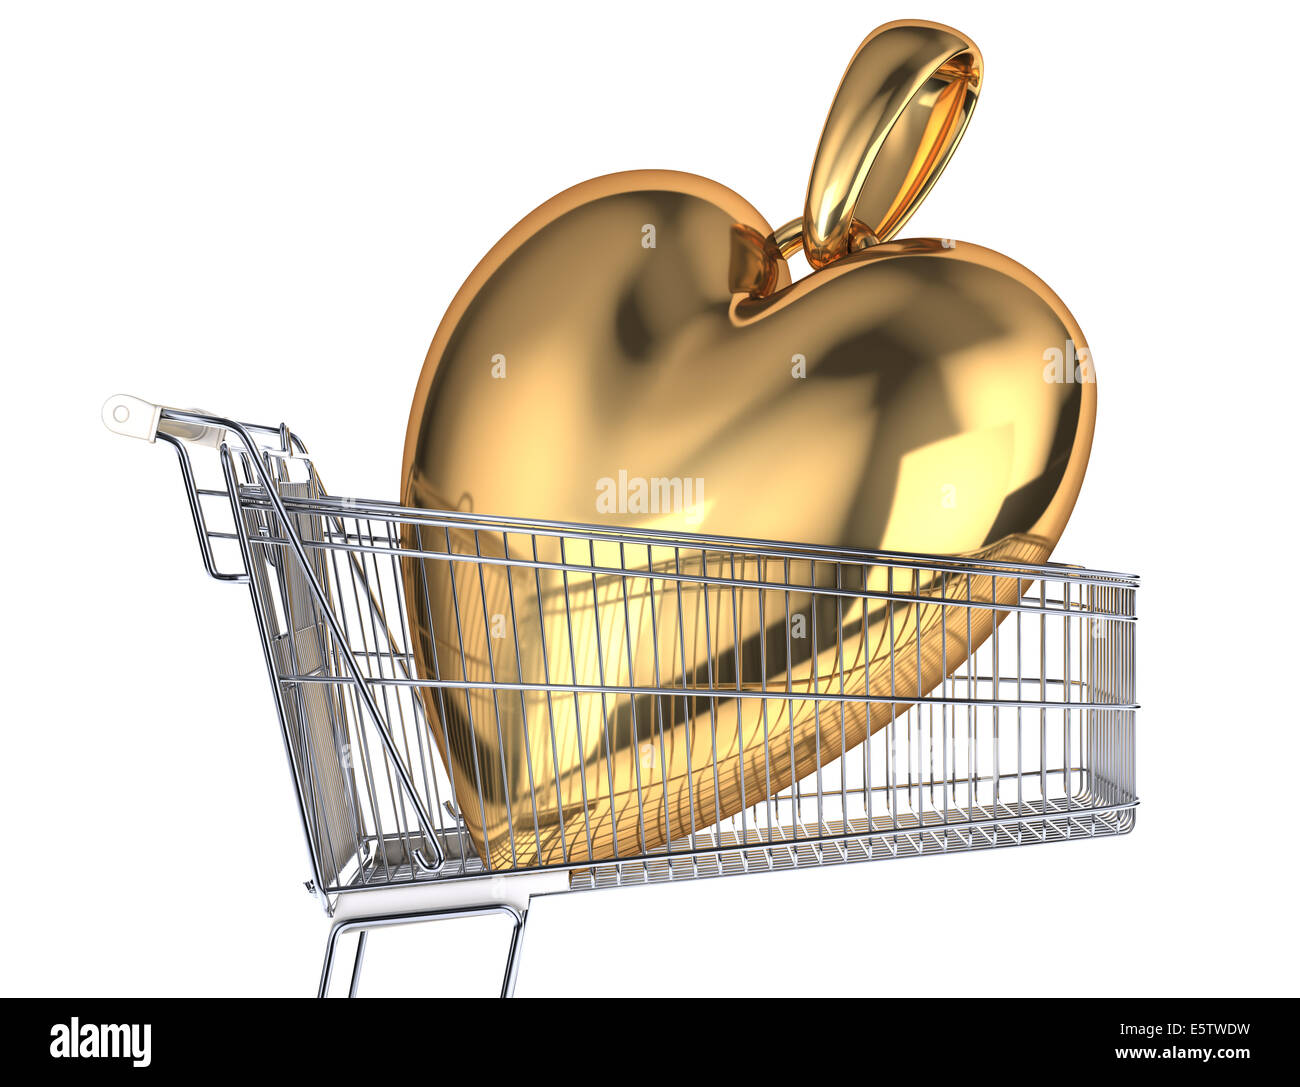 Einkaufswagen mit einem sehr großen gold Herzanhänger drin. Seitenansicht, auf weißem Hintergrund. Stockfoto